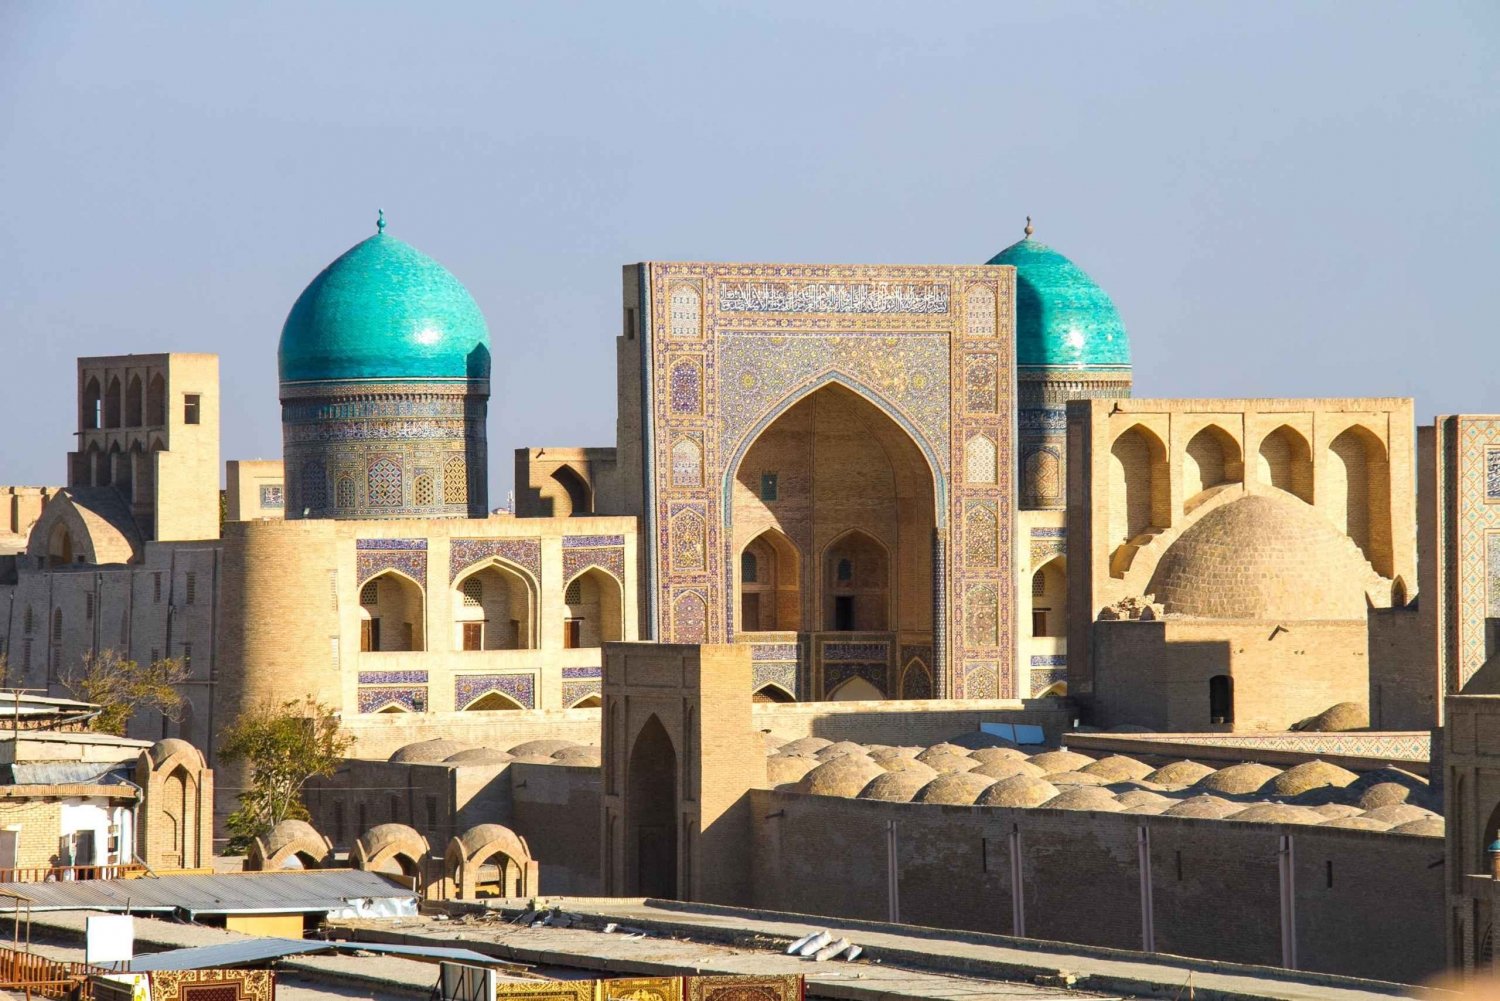 10-Day Cultural Uzbekistan Tour